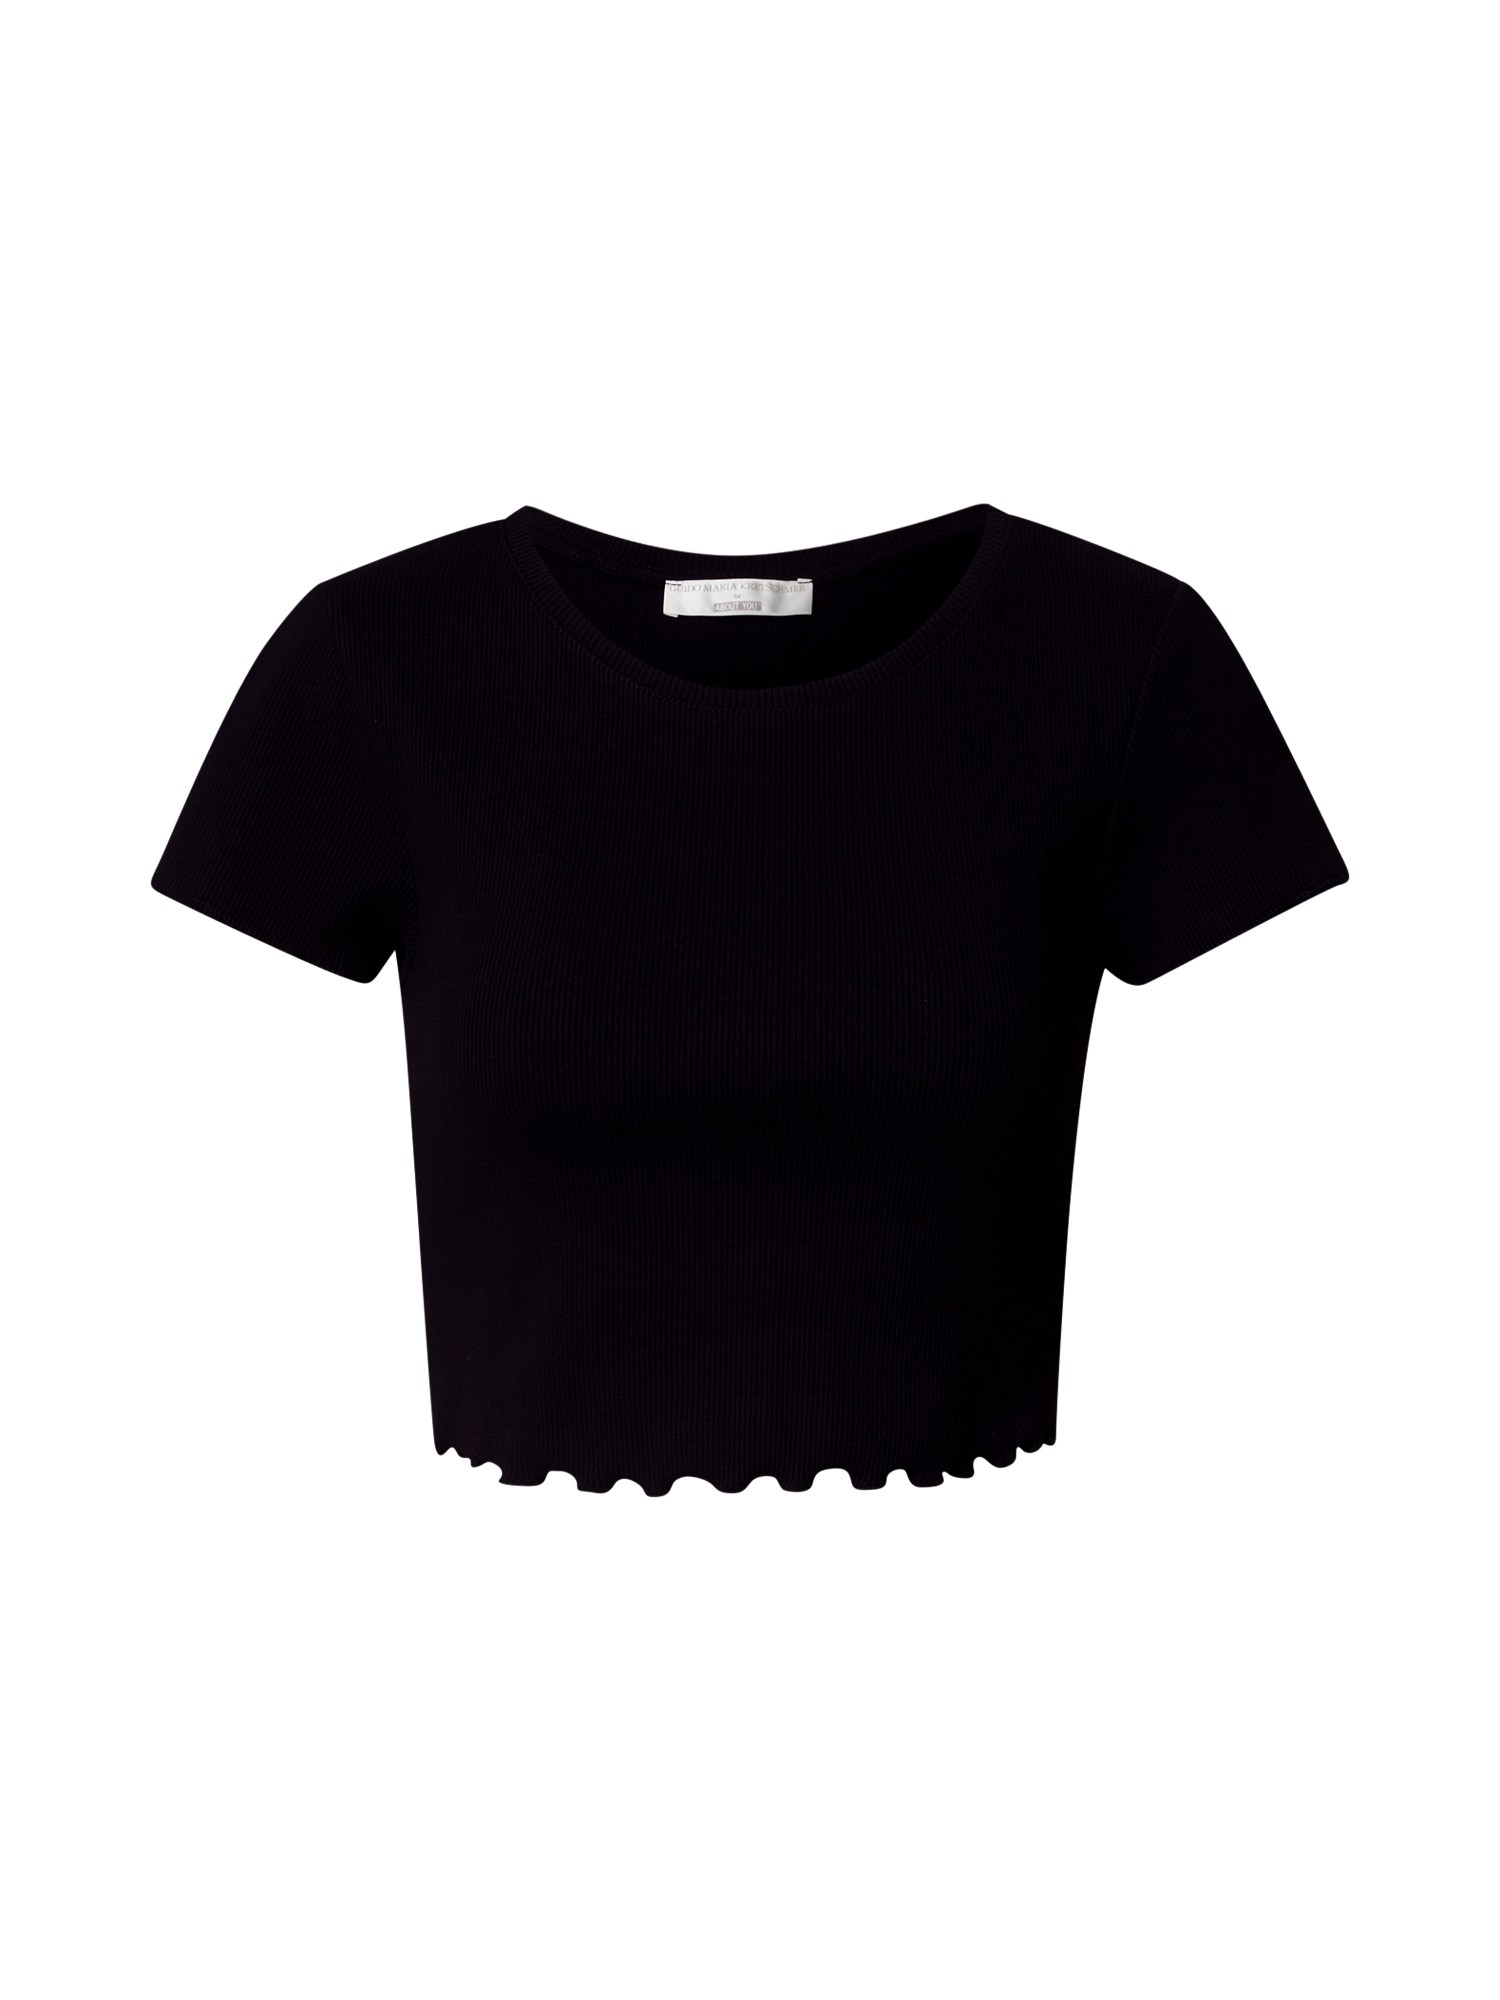 Odzież Kobiety Guido Maria Kretschmer Collection Koszulka Cami w kolorze Czarnym 